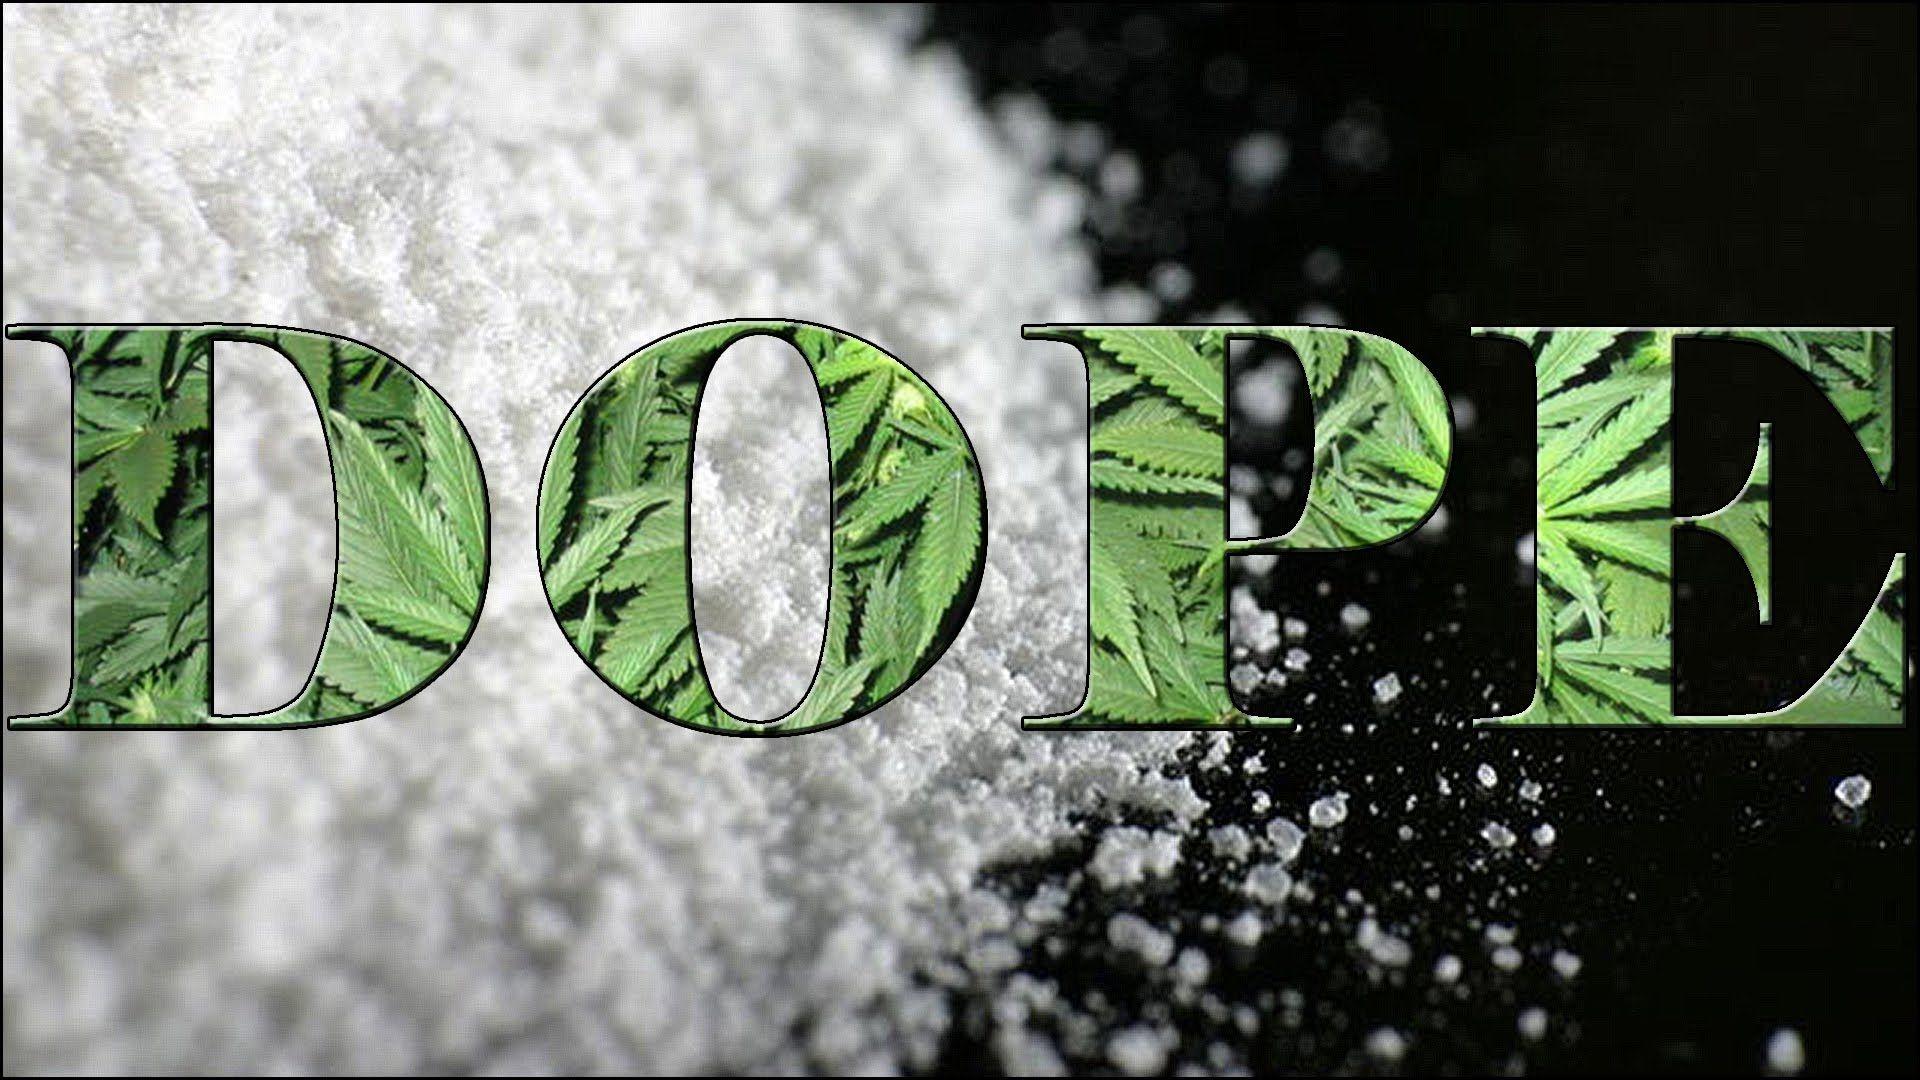 kokain kaufen, cocain kaufen, Drogen kaufen, drogen bestellen, drogen online kaufen, drogen online kaufen, kokain bestellen